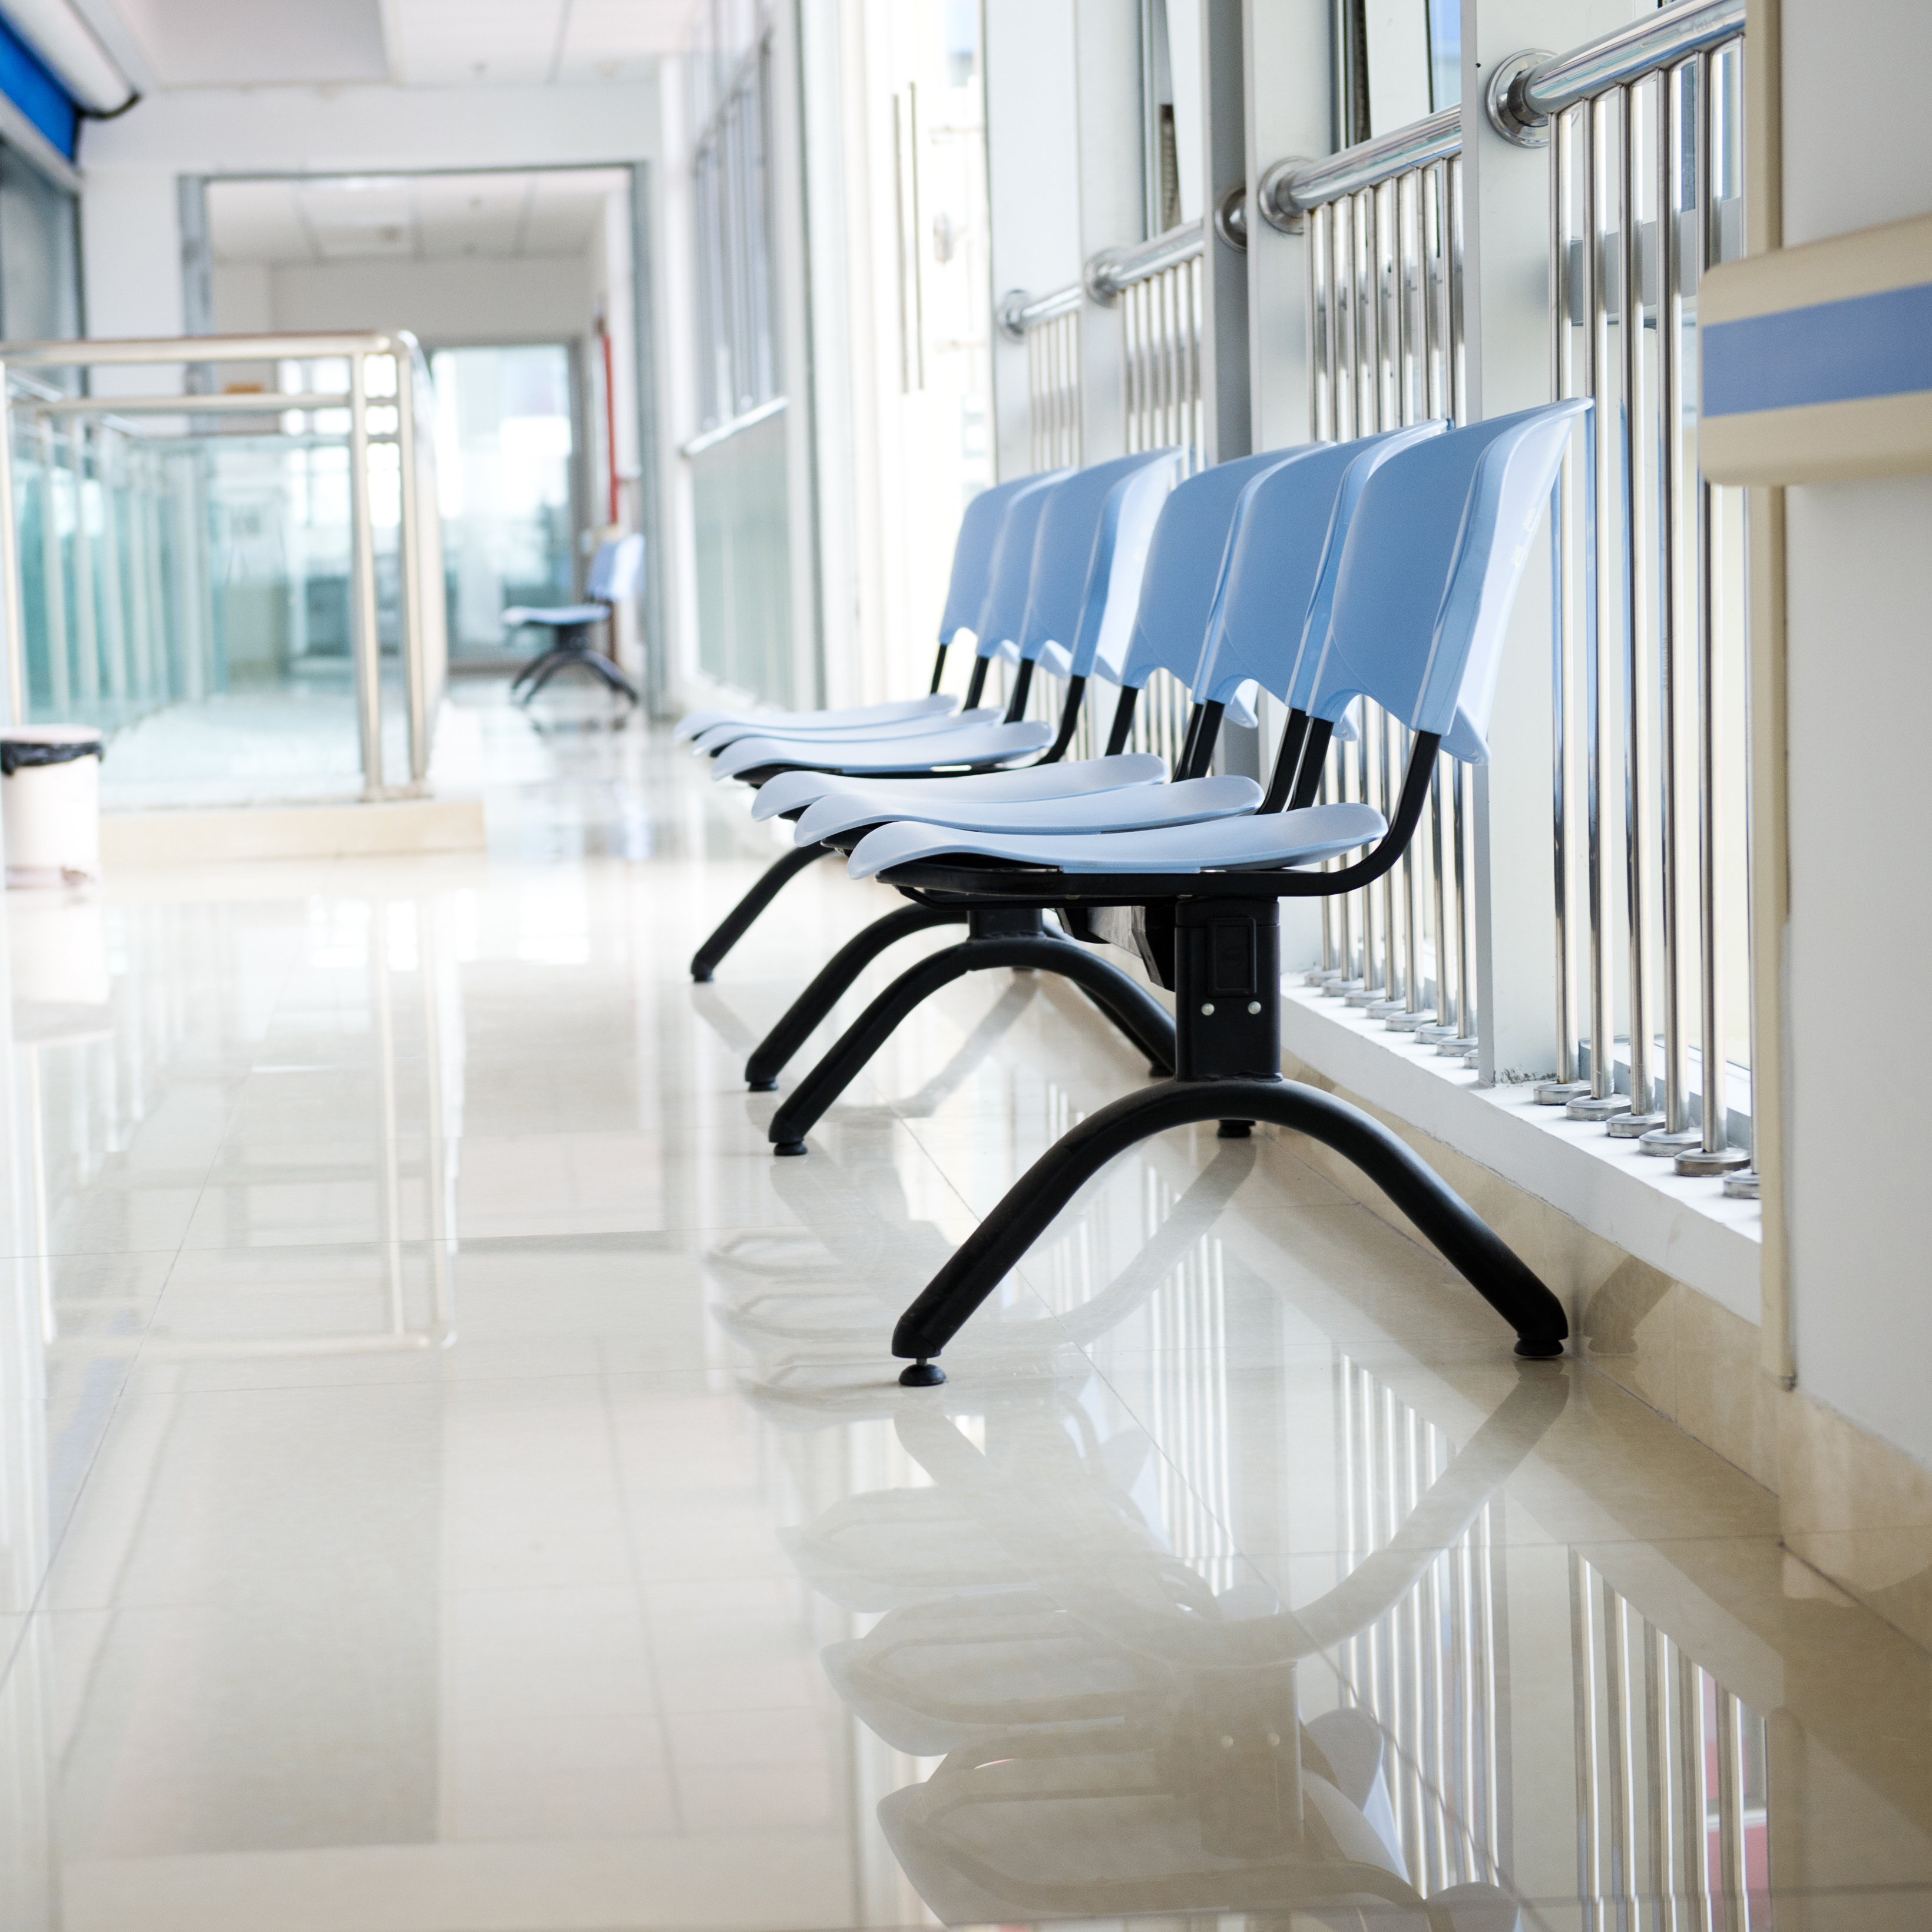 Chaises placées dans un couloir d'hôpital | Source : Shutterstock